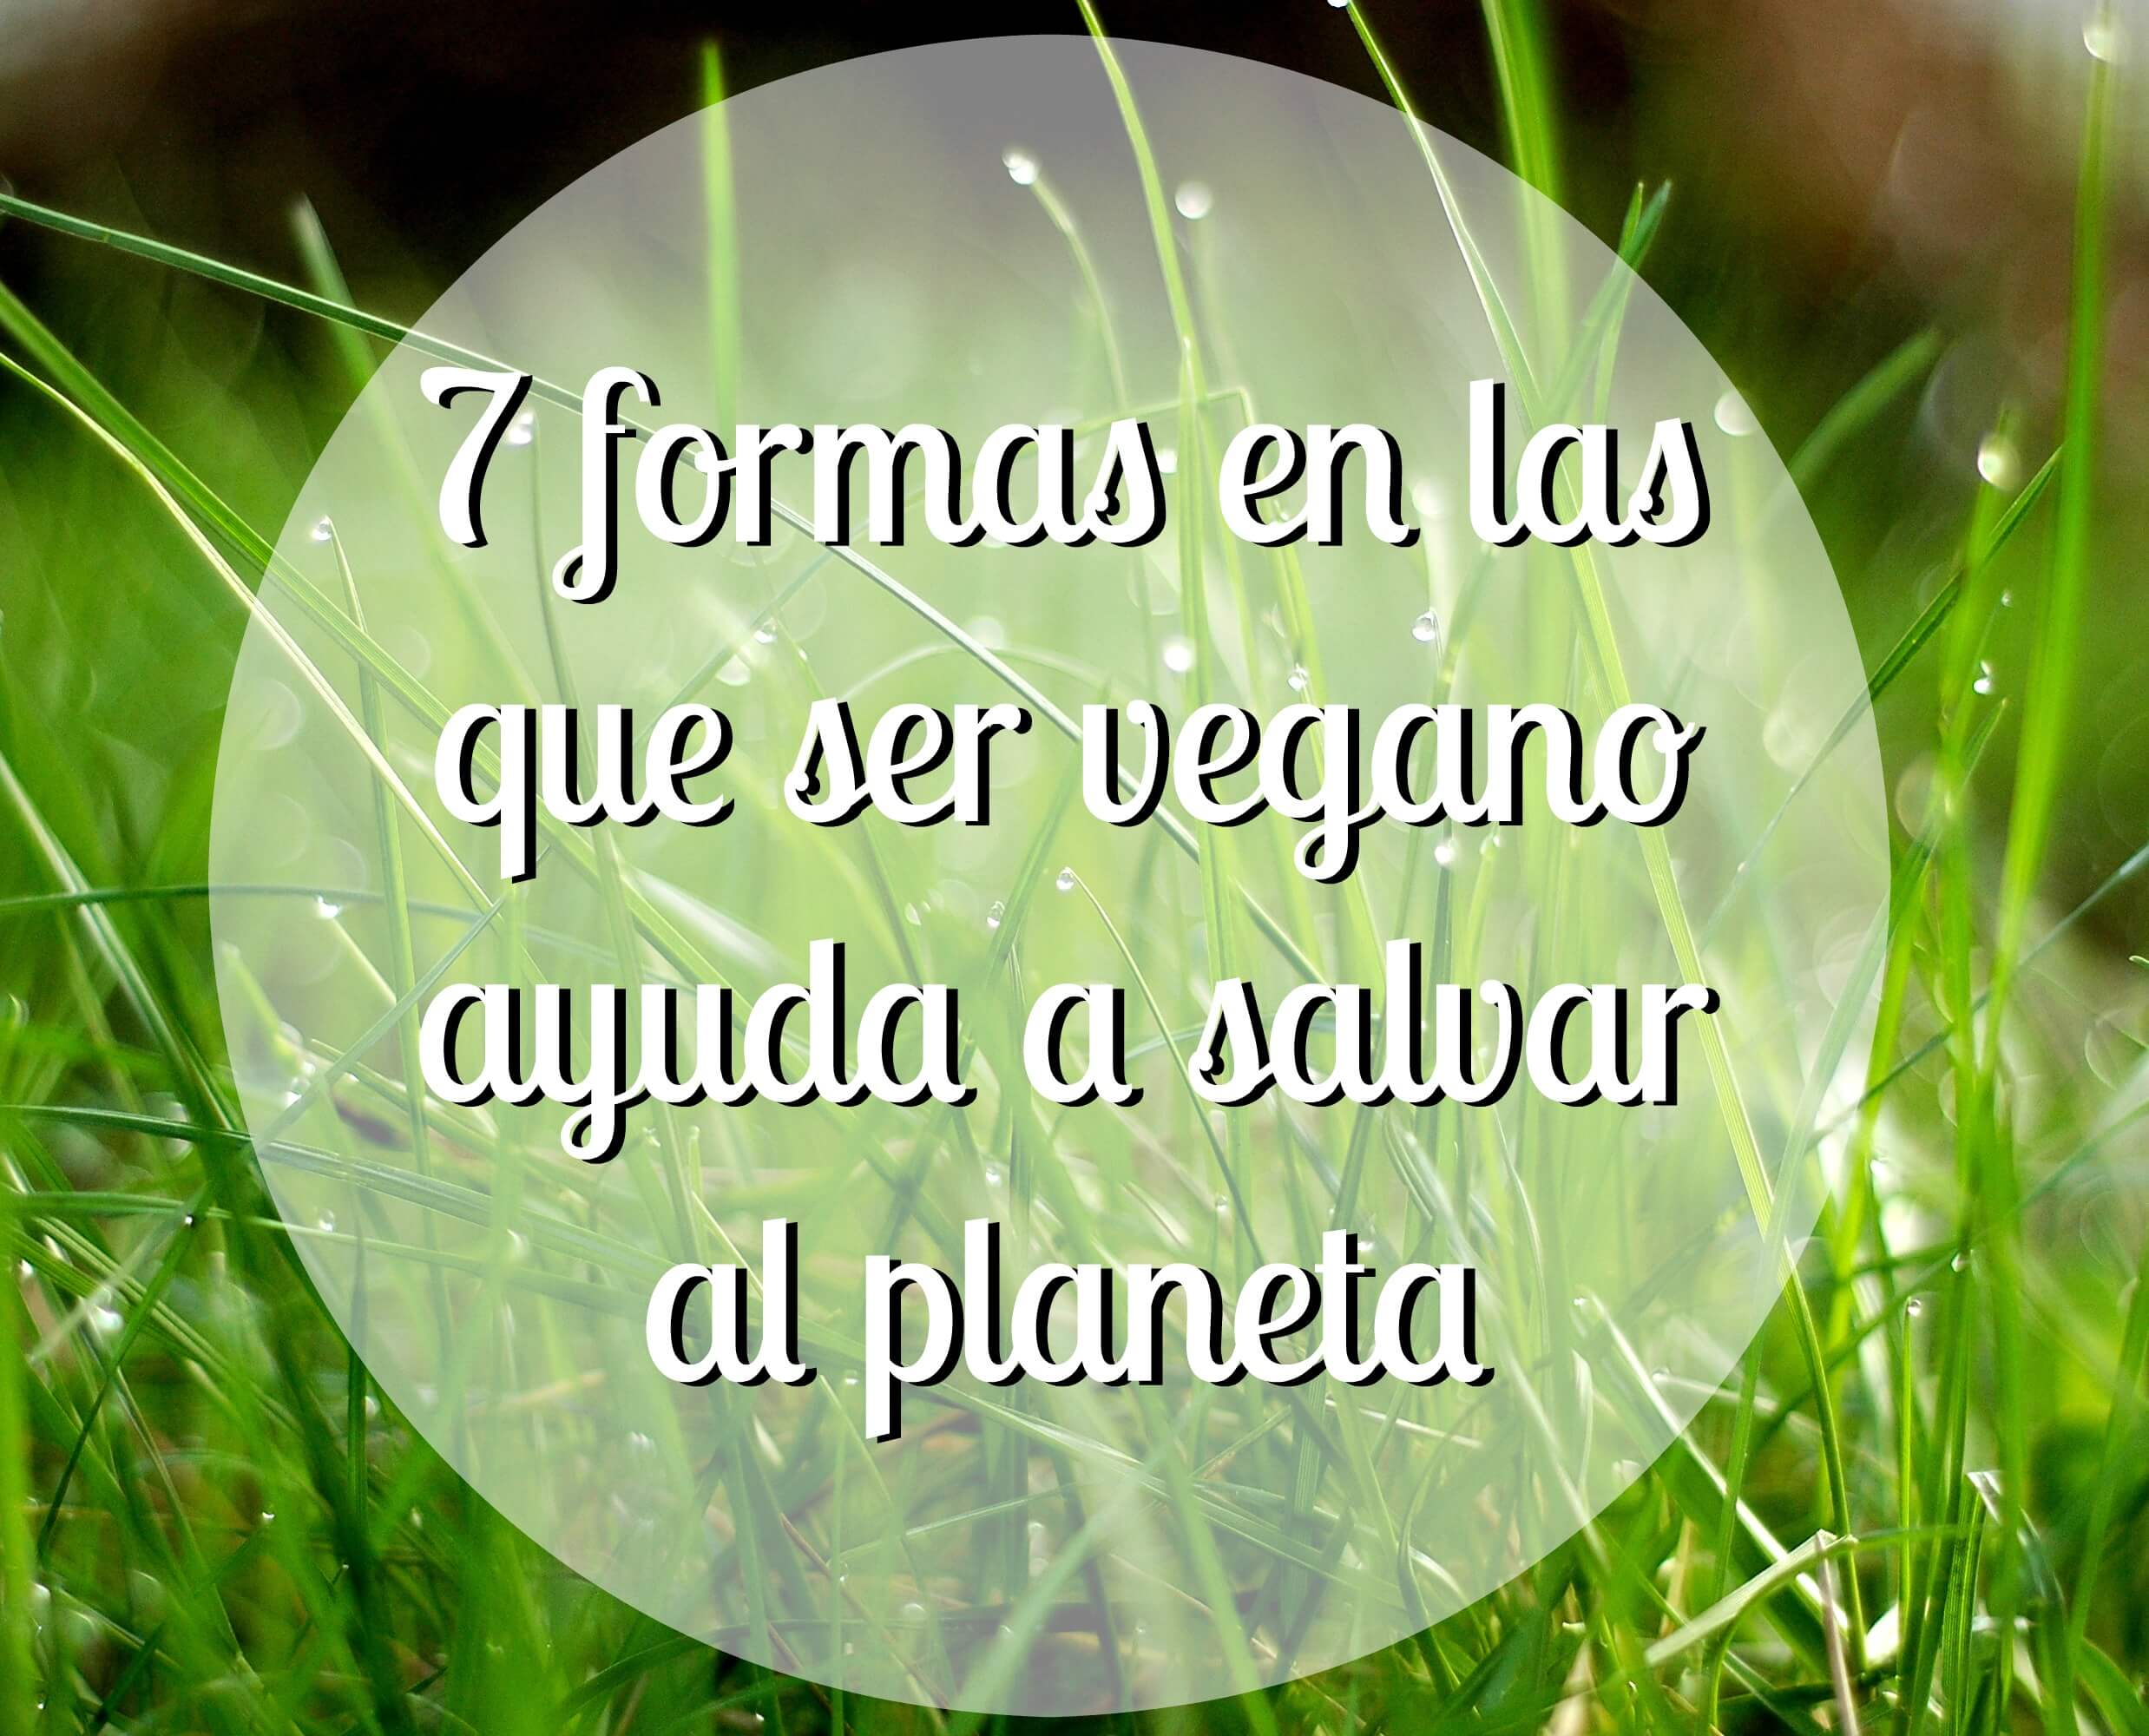 7 formas en las que vegano ayuda salvar planeta - Entradas - Latino